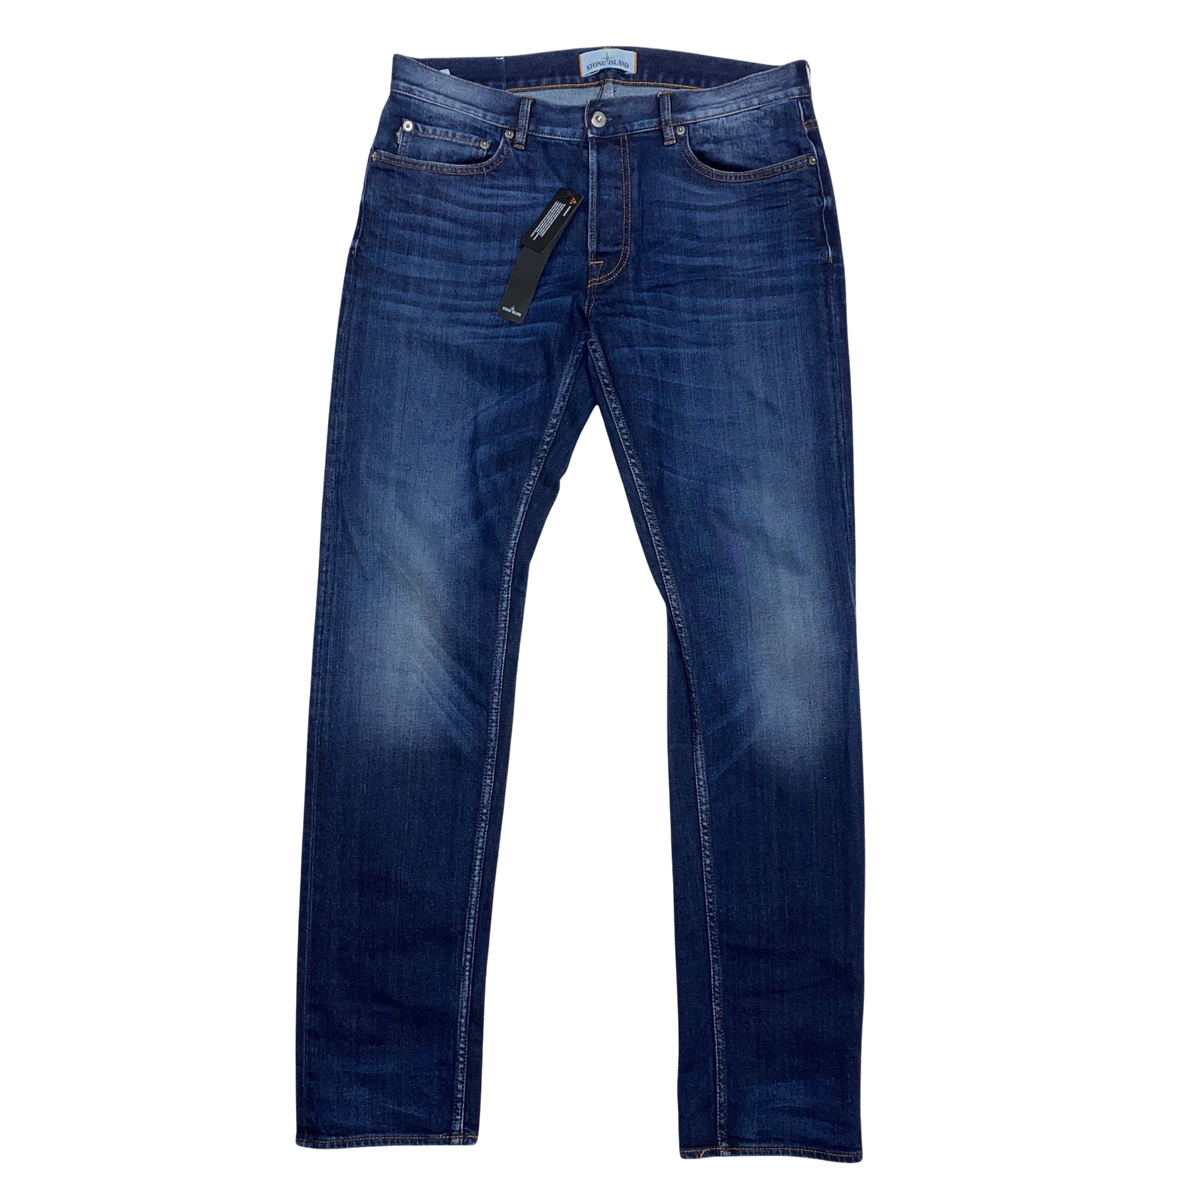 Stone Island 2017 Slim Fit Denim Jeans – Mat's Island